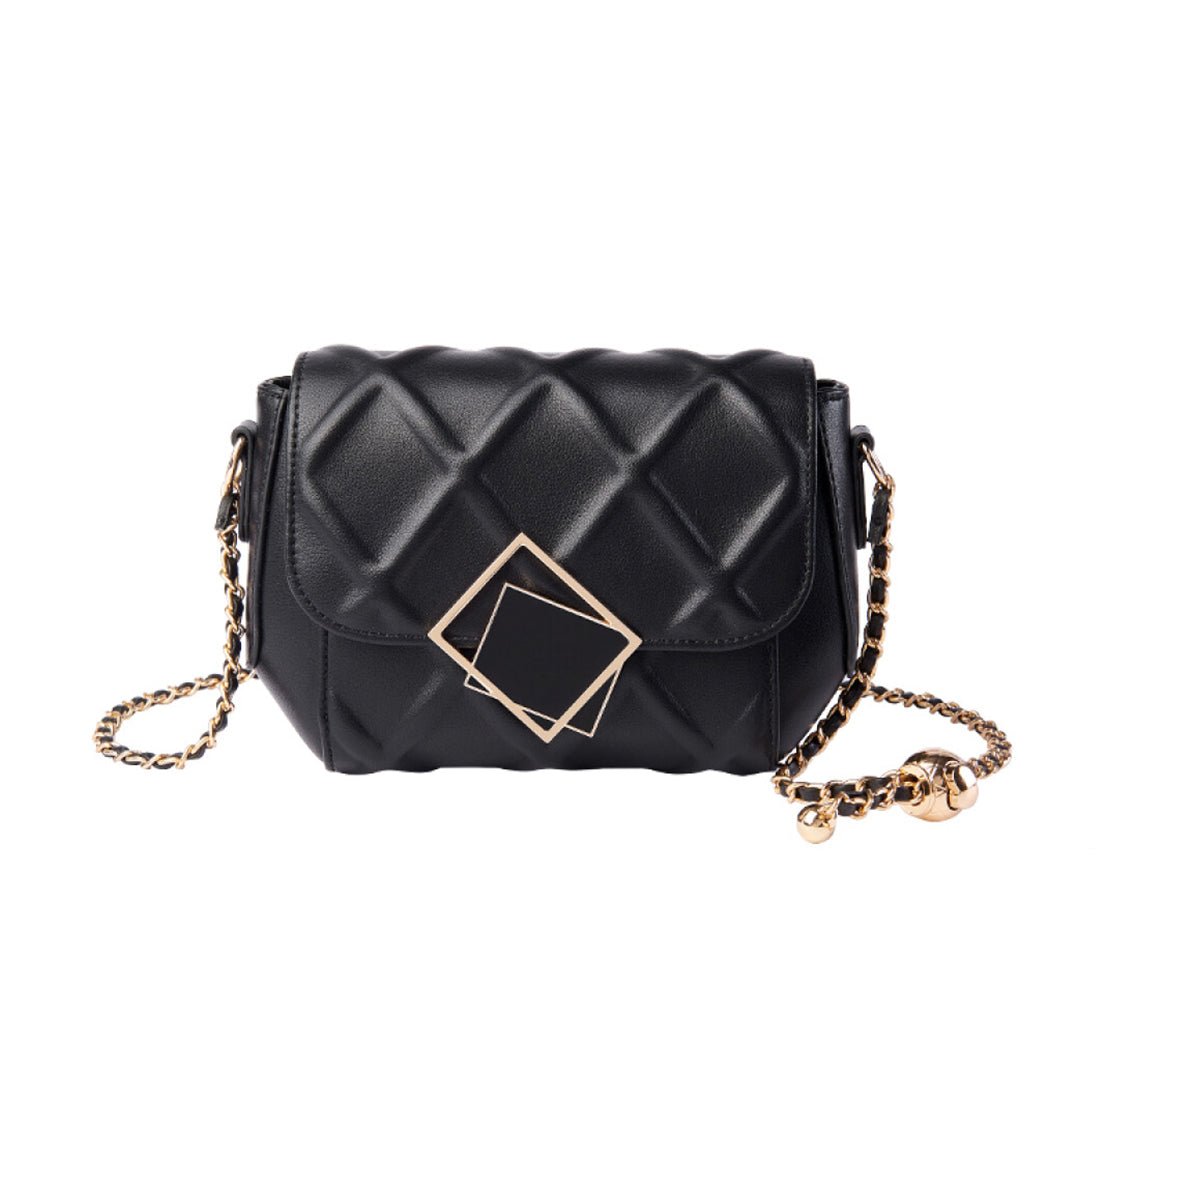 Trendy Black Leather Chain Shoulder Bag